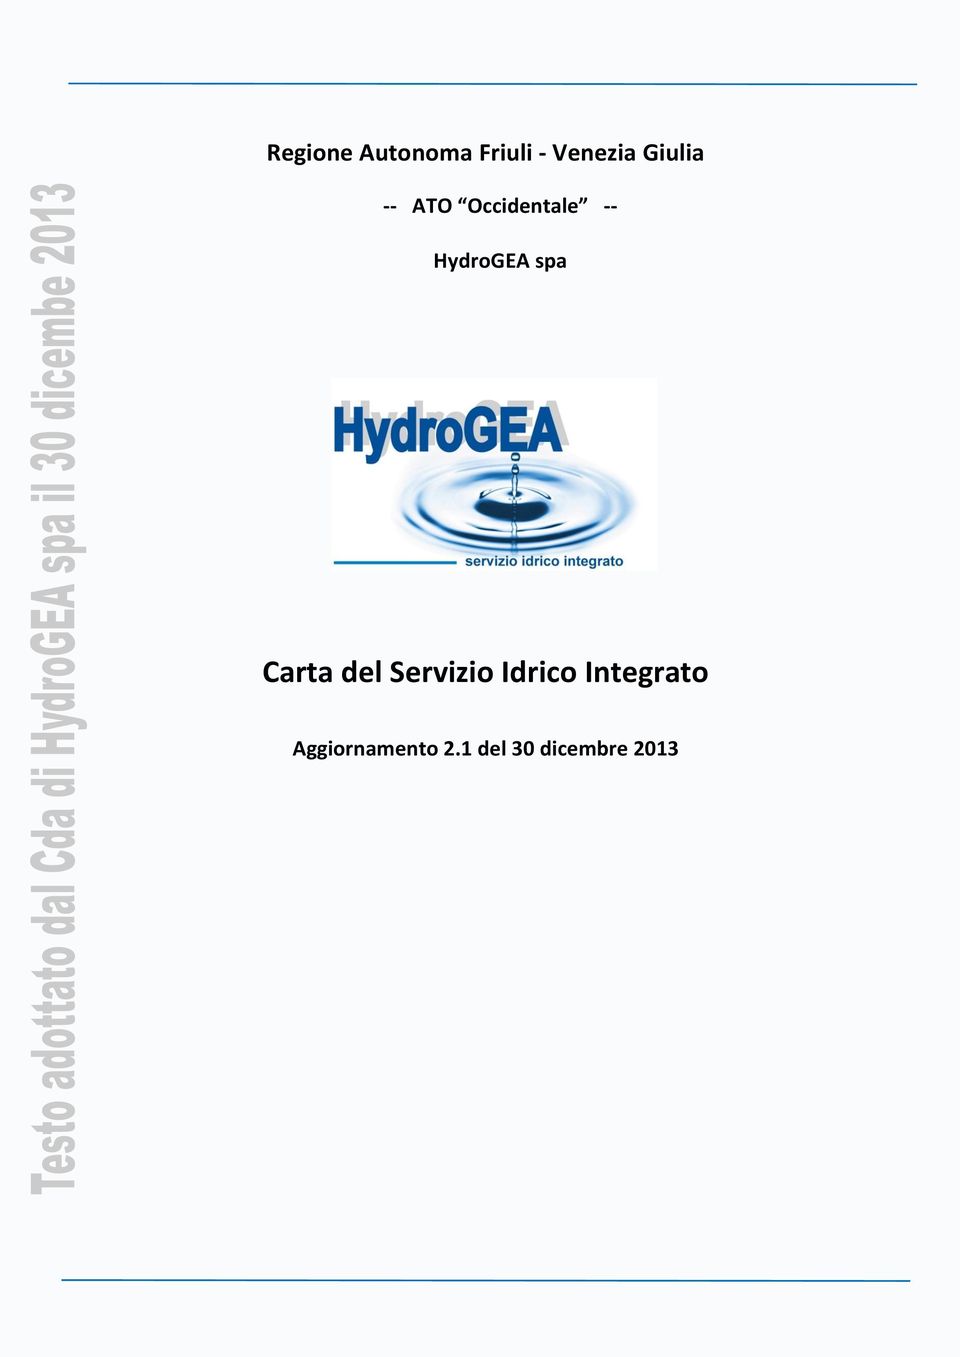 HydrGEA spa Carta del Servizi Idric